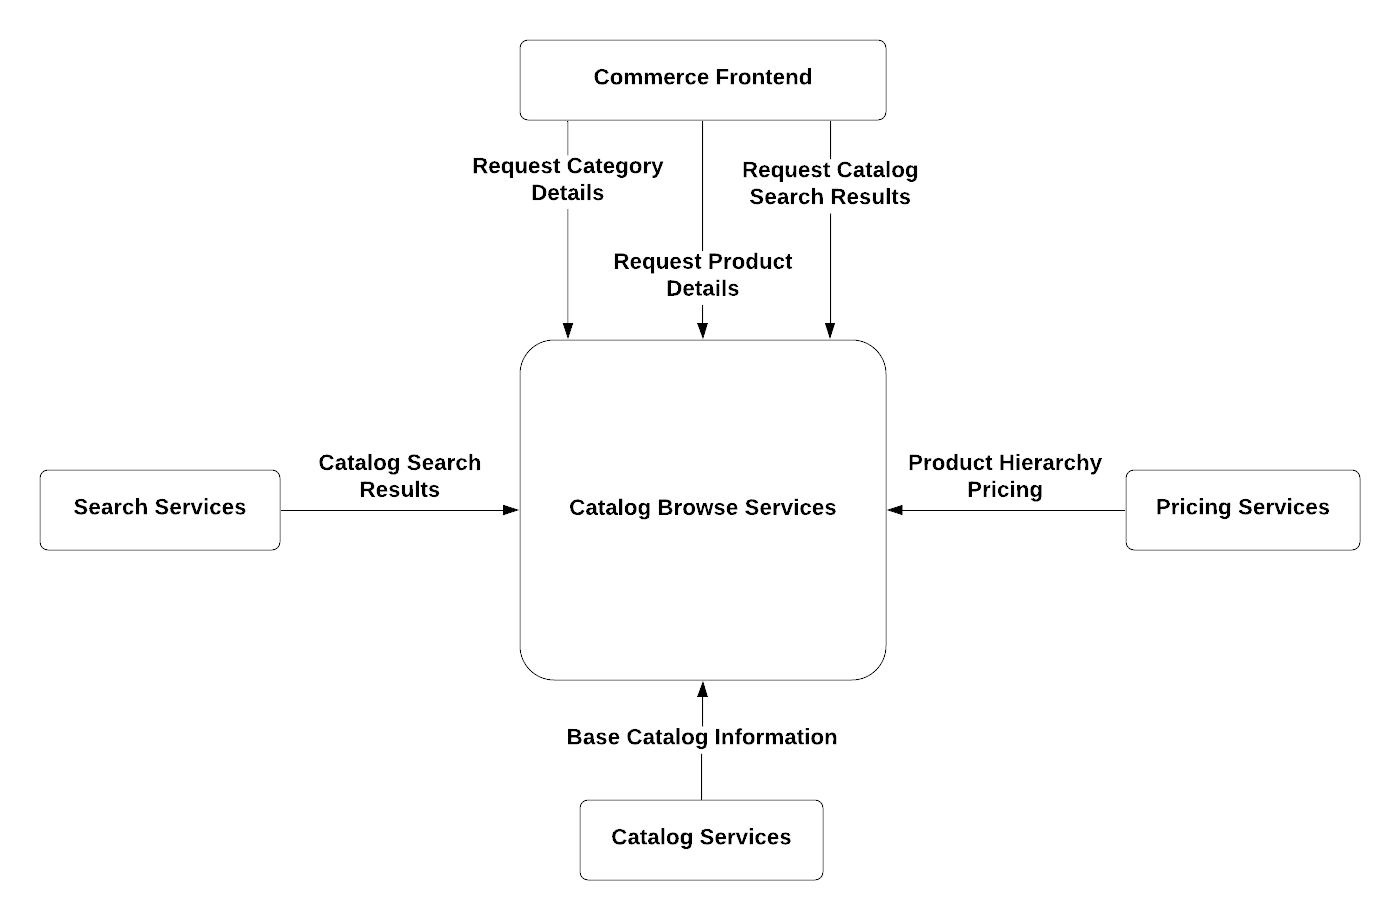 Context Diagram for Catalog Browse Services